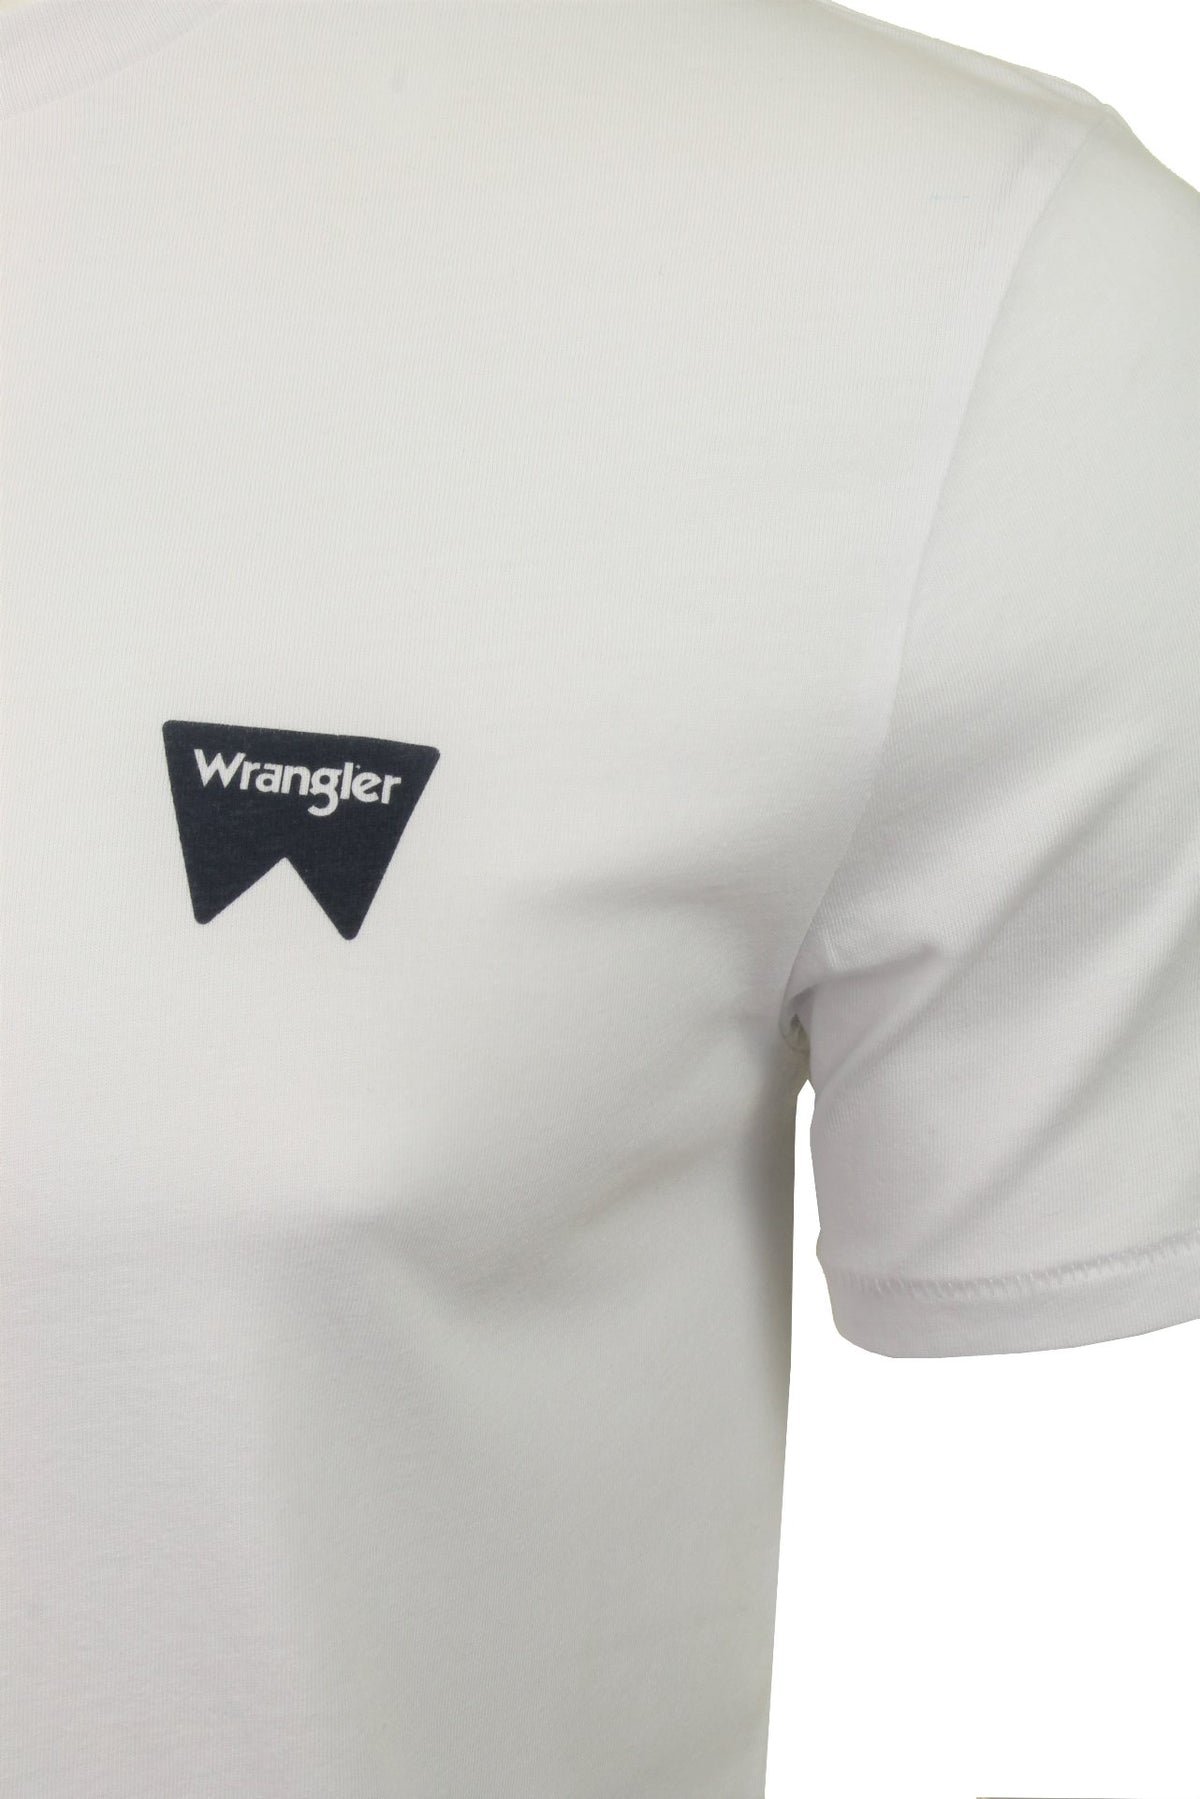 Wrangler Mens T-Shirt 'SS Sign off Tee', 02, W7C07D, White